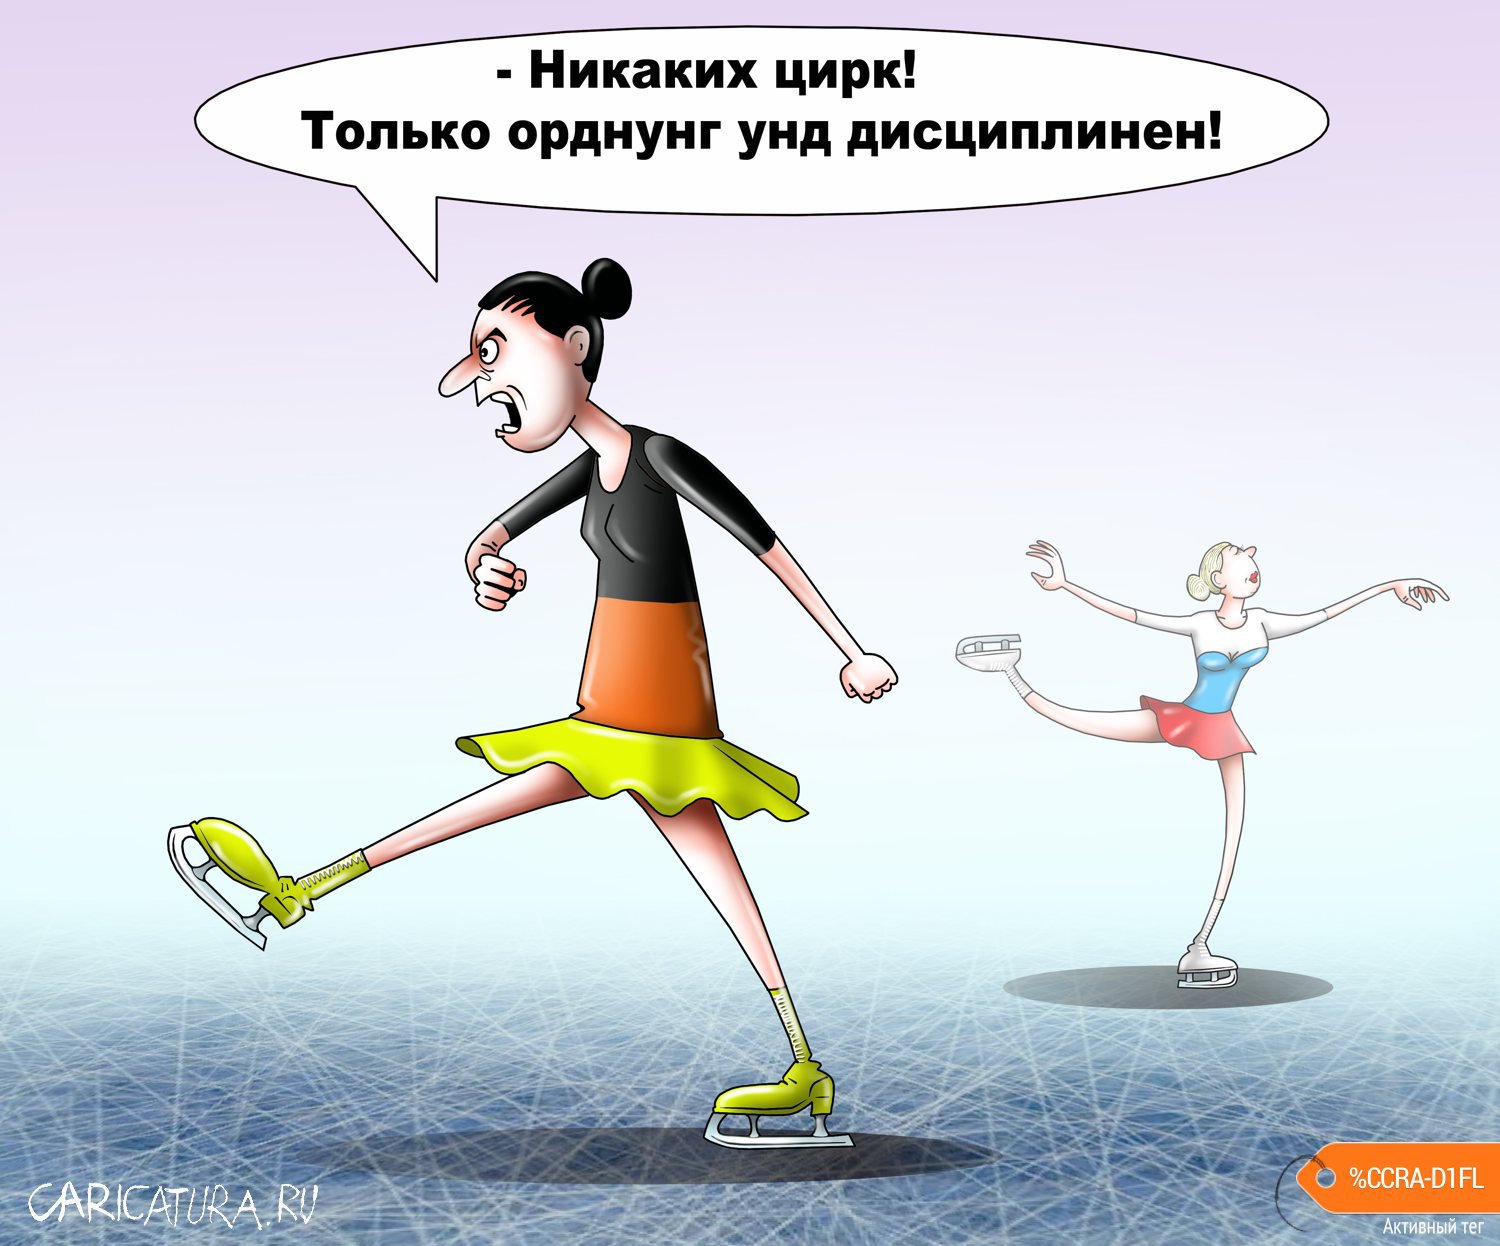 Карикатура "Цирк на льду", Сергей Корсун